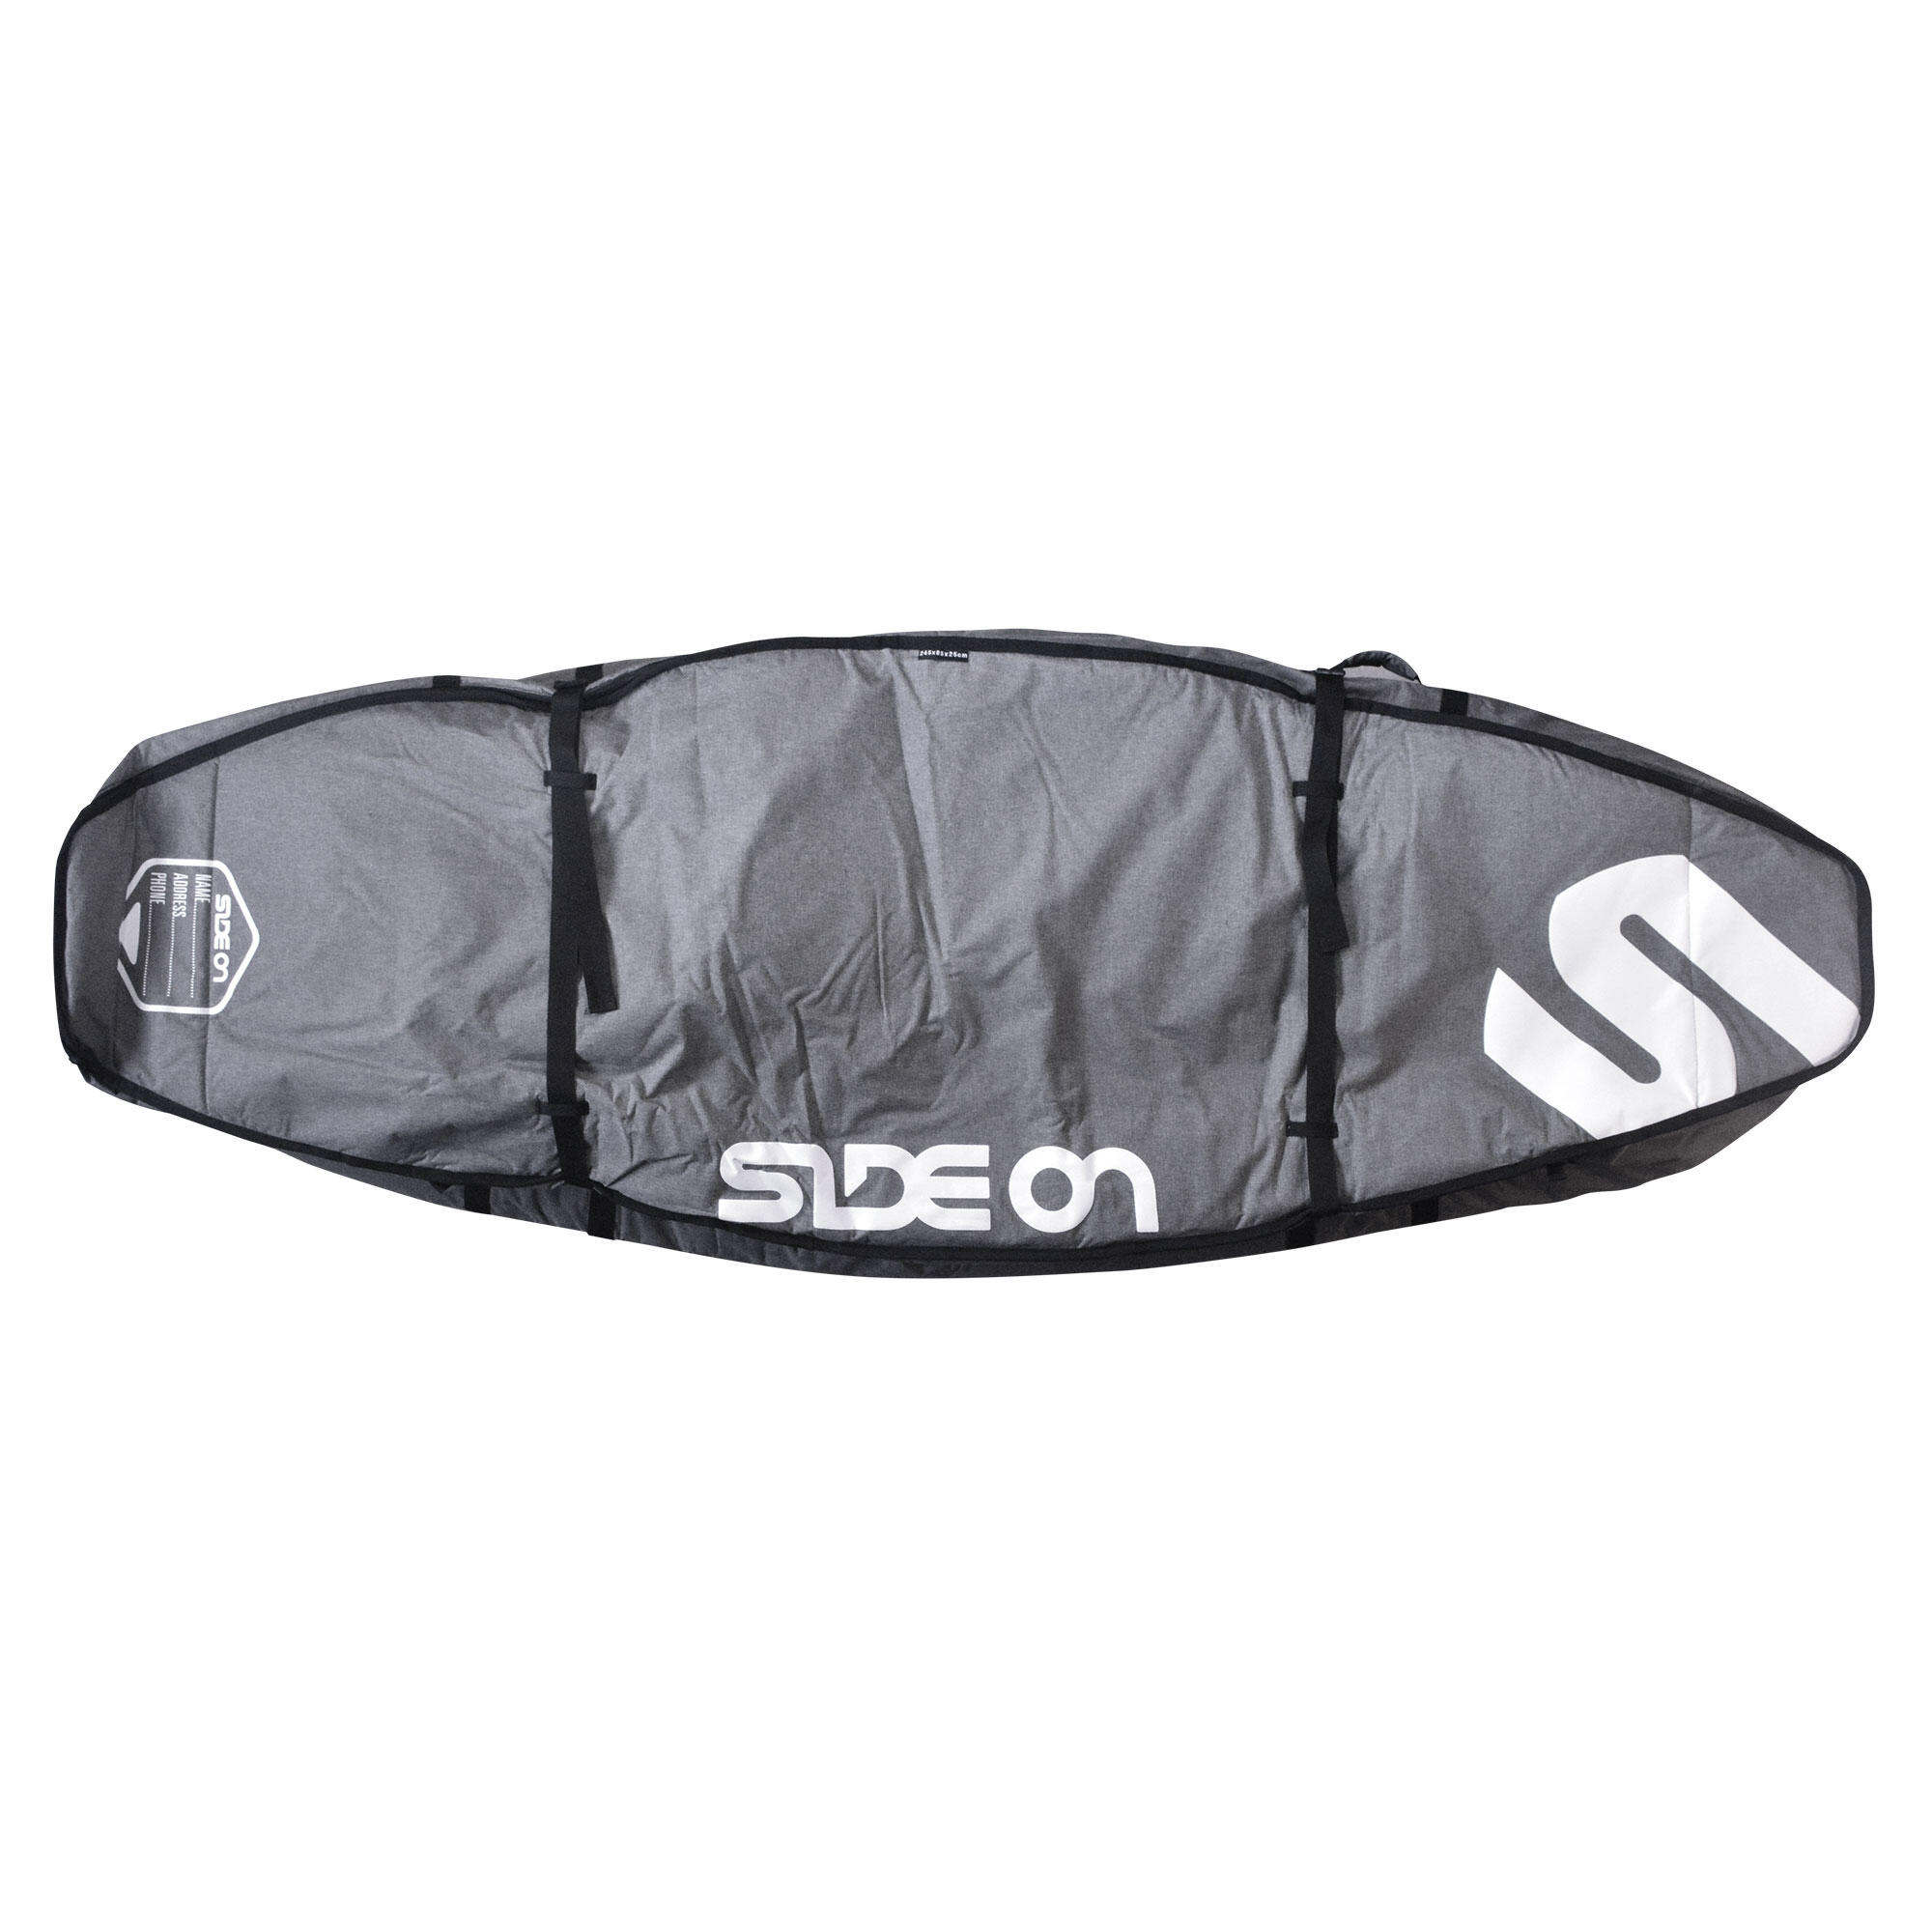 SIDE ON Boardbag Windsurfboard Doppelhülle 10 mm 245/85 cm Side On grau/weiss EINHEITSGRÖSSE